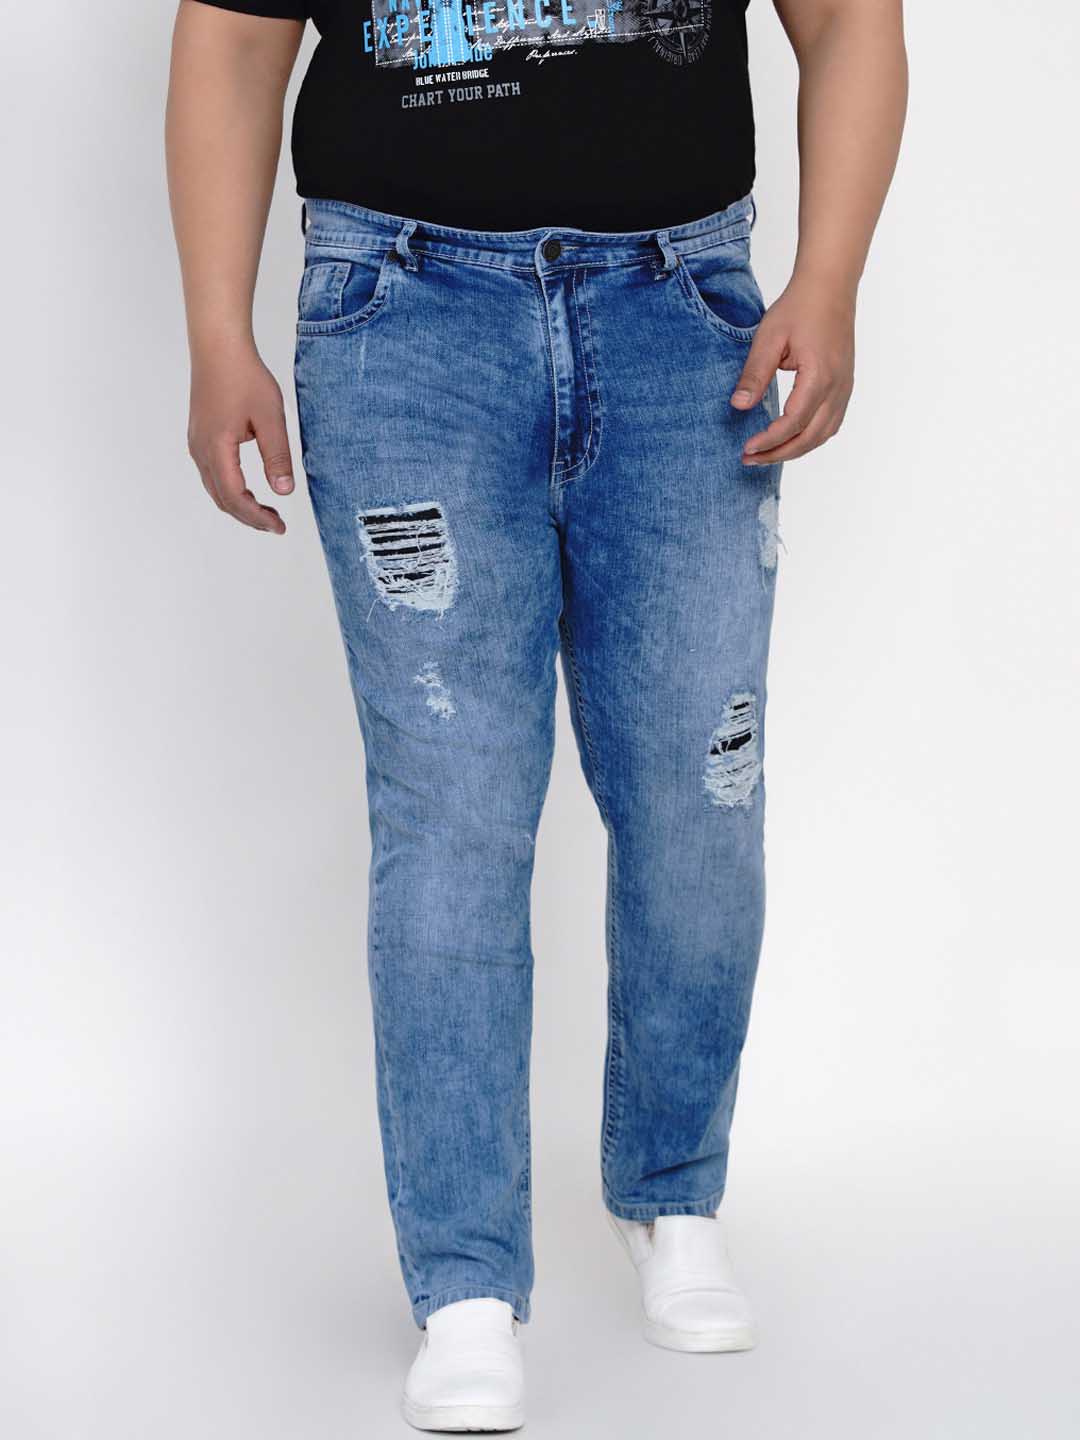 bottomwear/jeans/JPJ12112/jpj12112-1.jpg